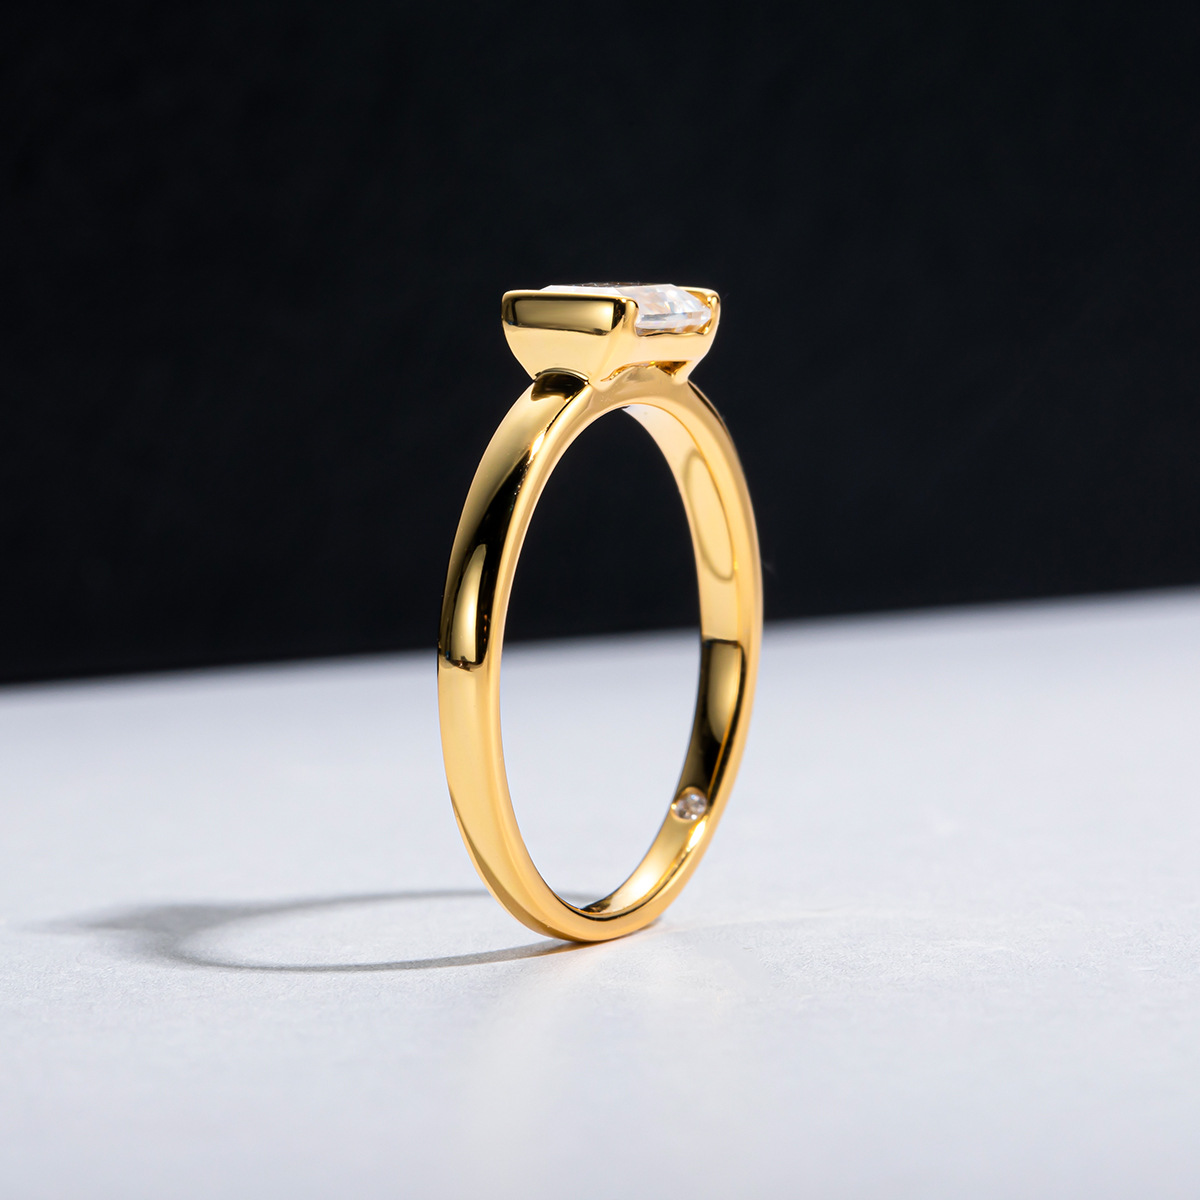 핫 셀러 S925 실버 D 컬러 1ct Moissanite 약혼 반지 5x7mm Emerald Cut Simple Princess Square Gold Ring